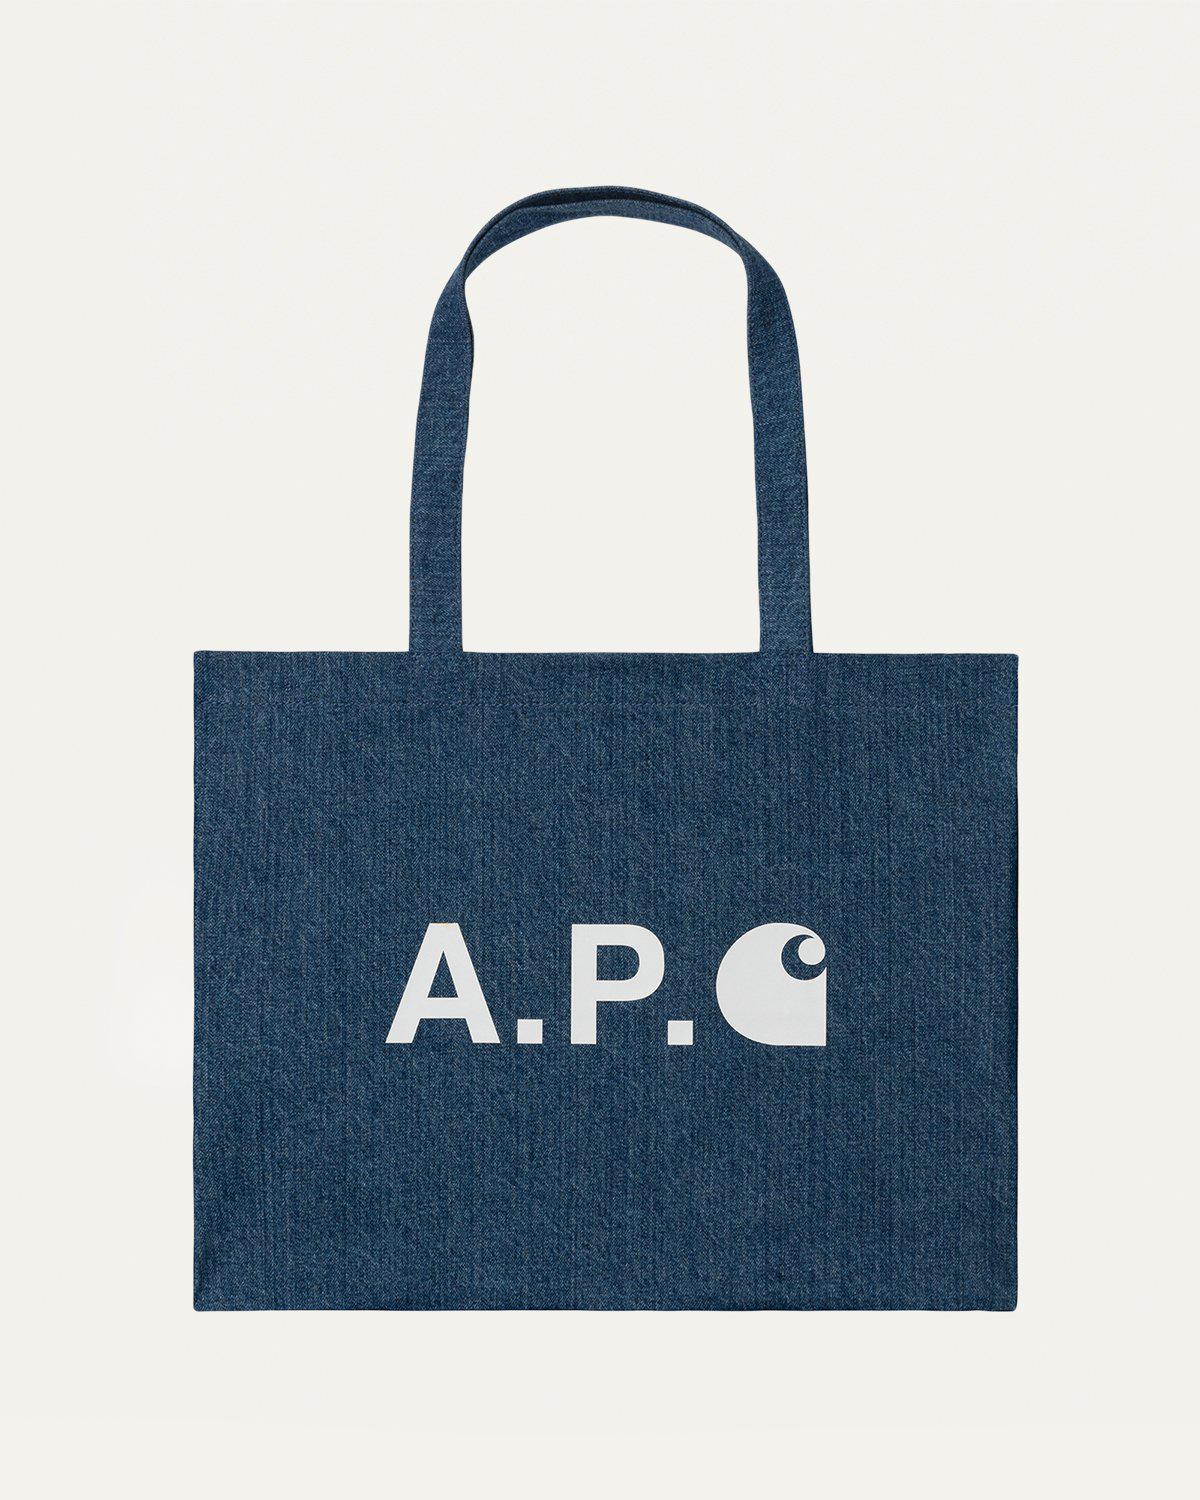 A.P.C. x Carhartt WIP – Alan Shopping Bag Indigo by A.P.C. X CARHARTT WIP